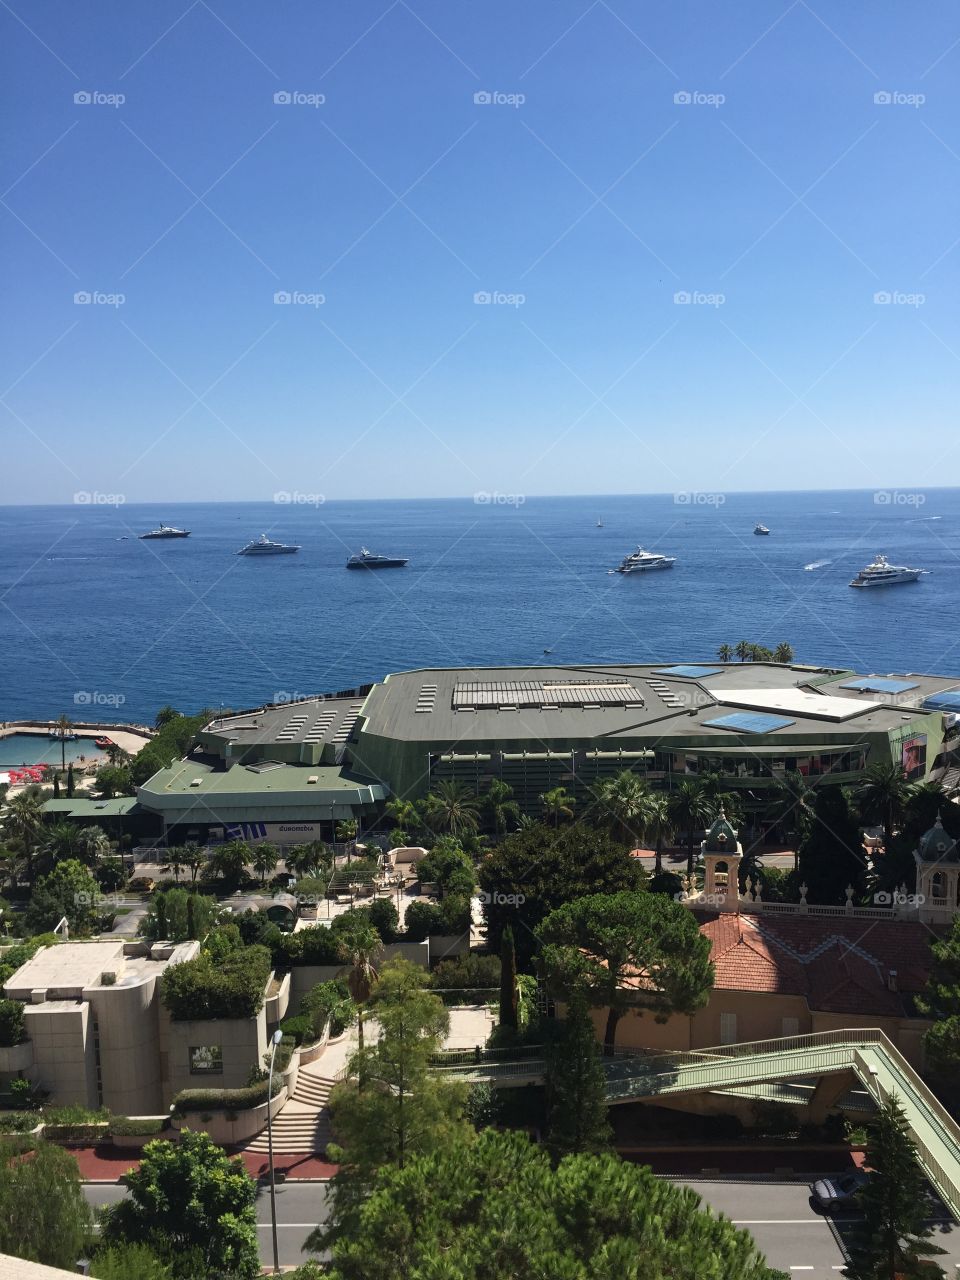 Monaco. Monaco looking out